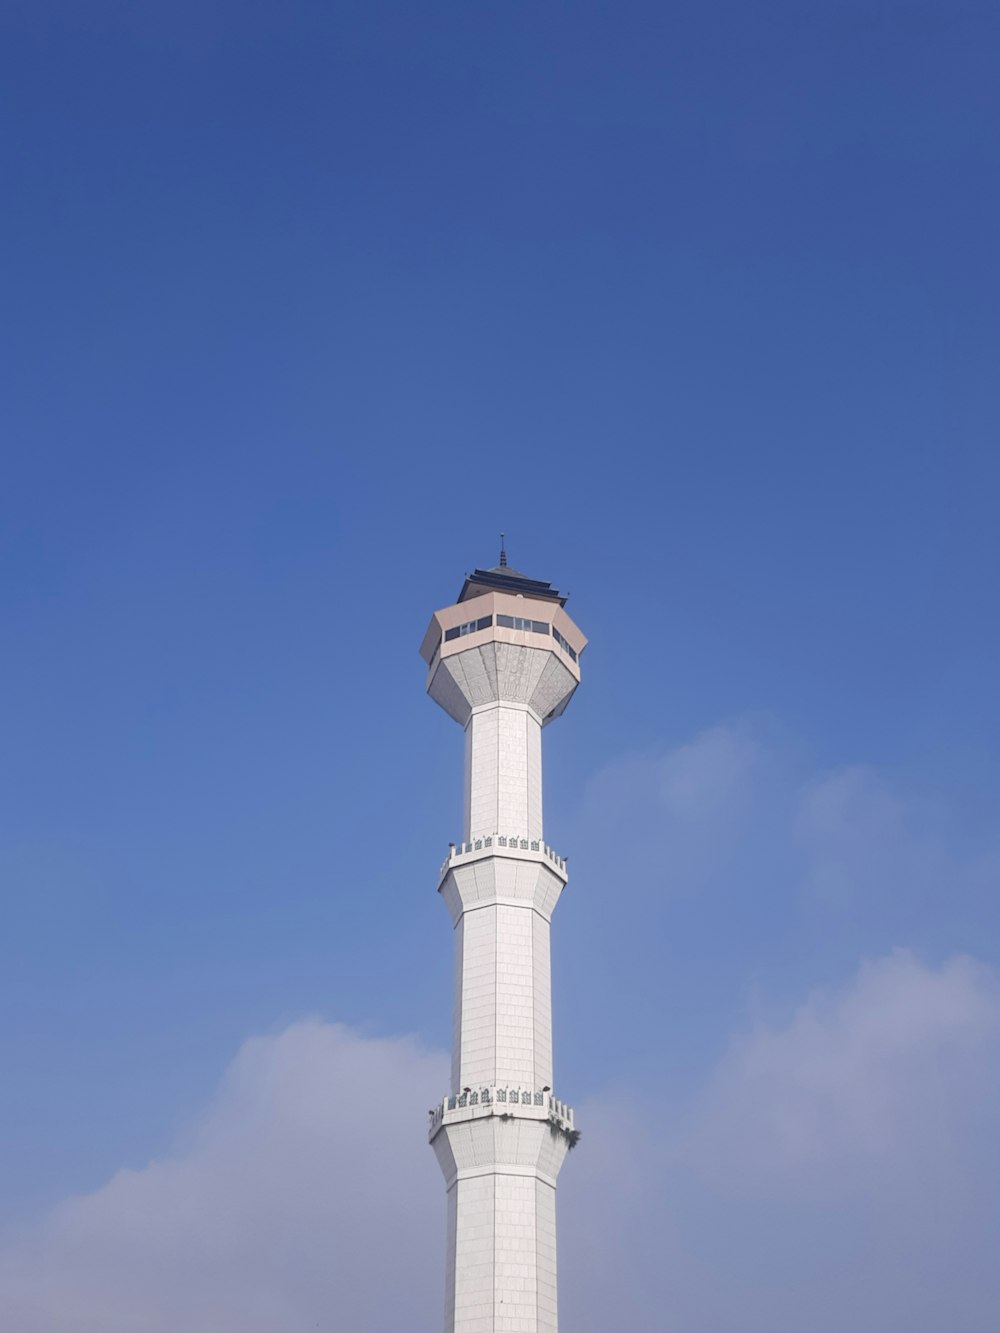 Ein hoher weißer Turm mit einer Uhr auf der Spitze